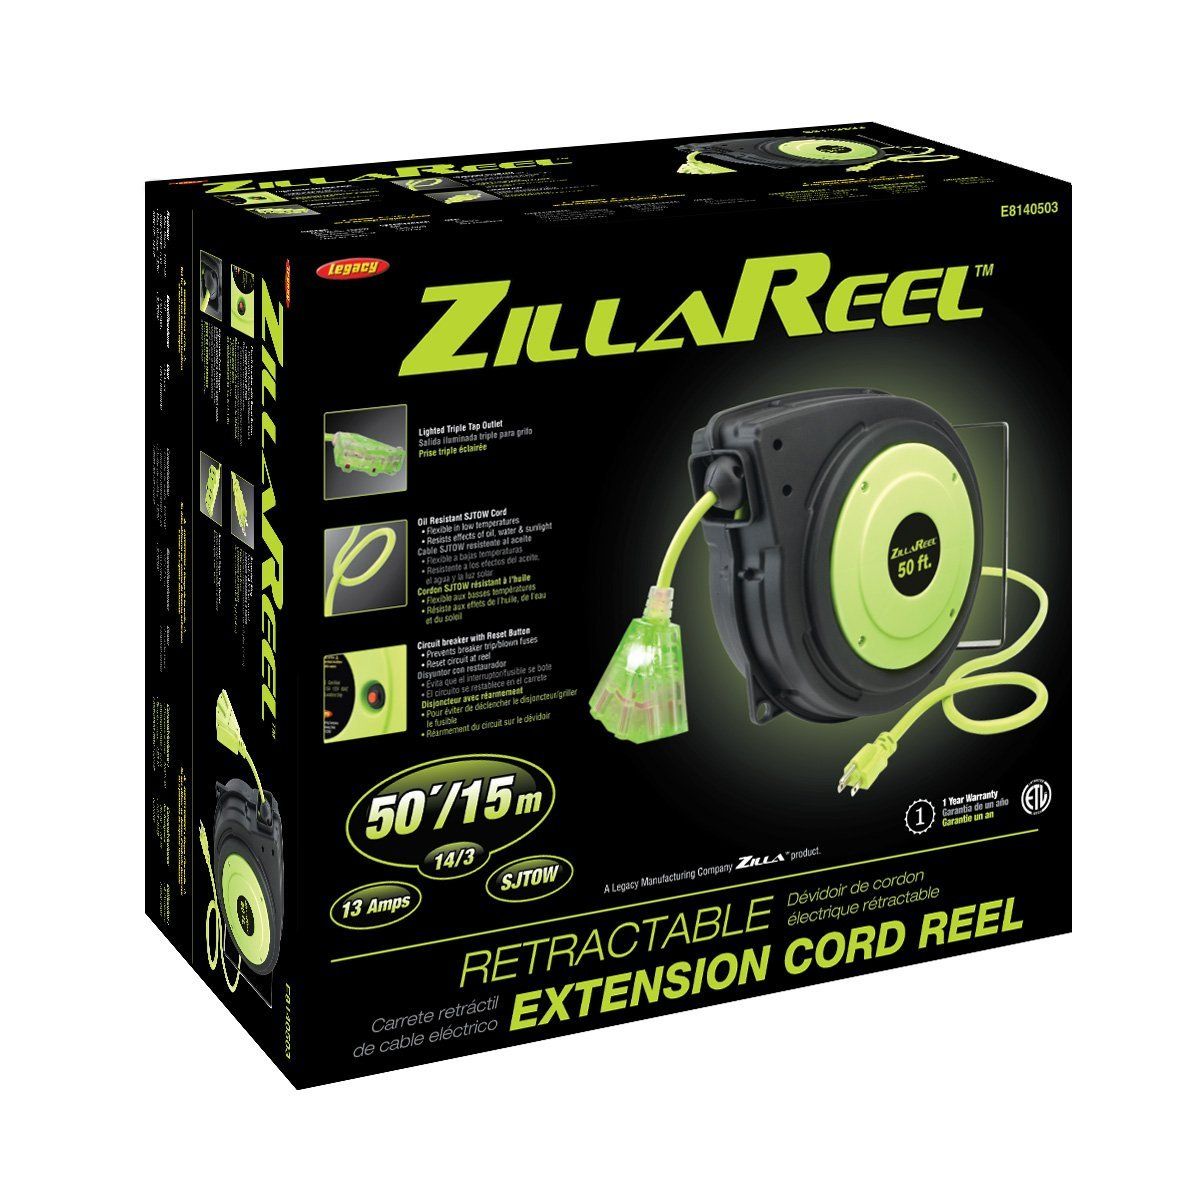 Amazon.com: Flexzilla ZillaReel 50 ft. Retractable Extension Cord Reel -  E8140503: Home Improvement | Extension cord, Retractable, Cord